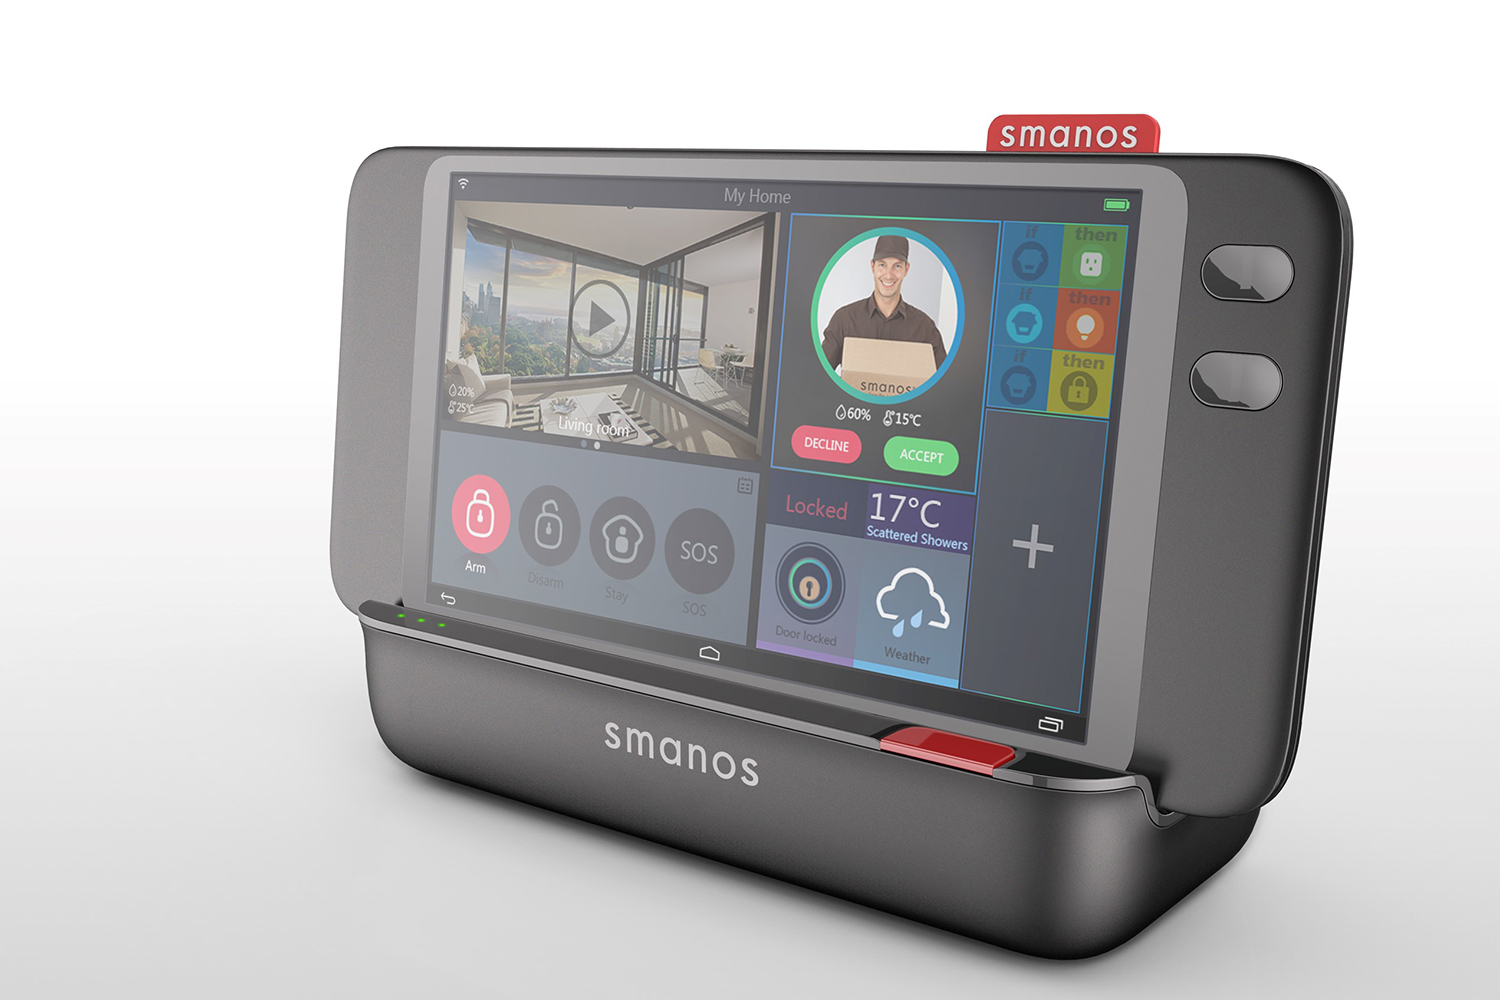 smanos wireless security smart home touchscreen controller 1